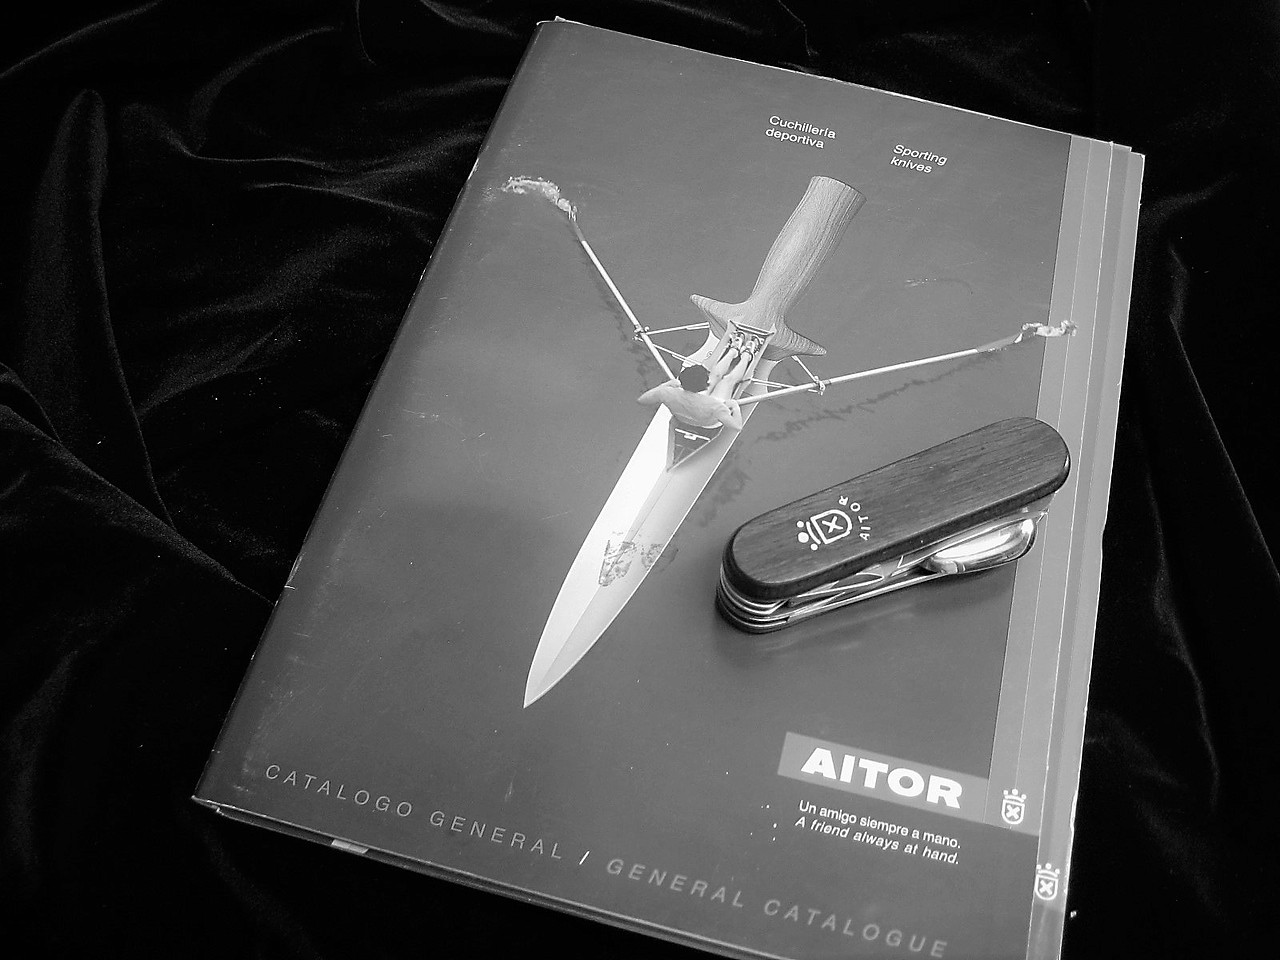 Aitor (antes del 2002) Busqueda por Marcas - Navajas /